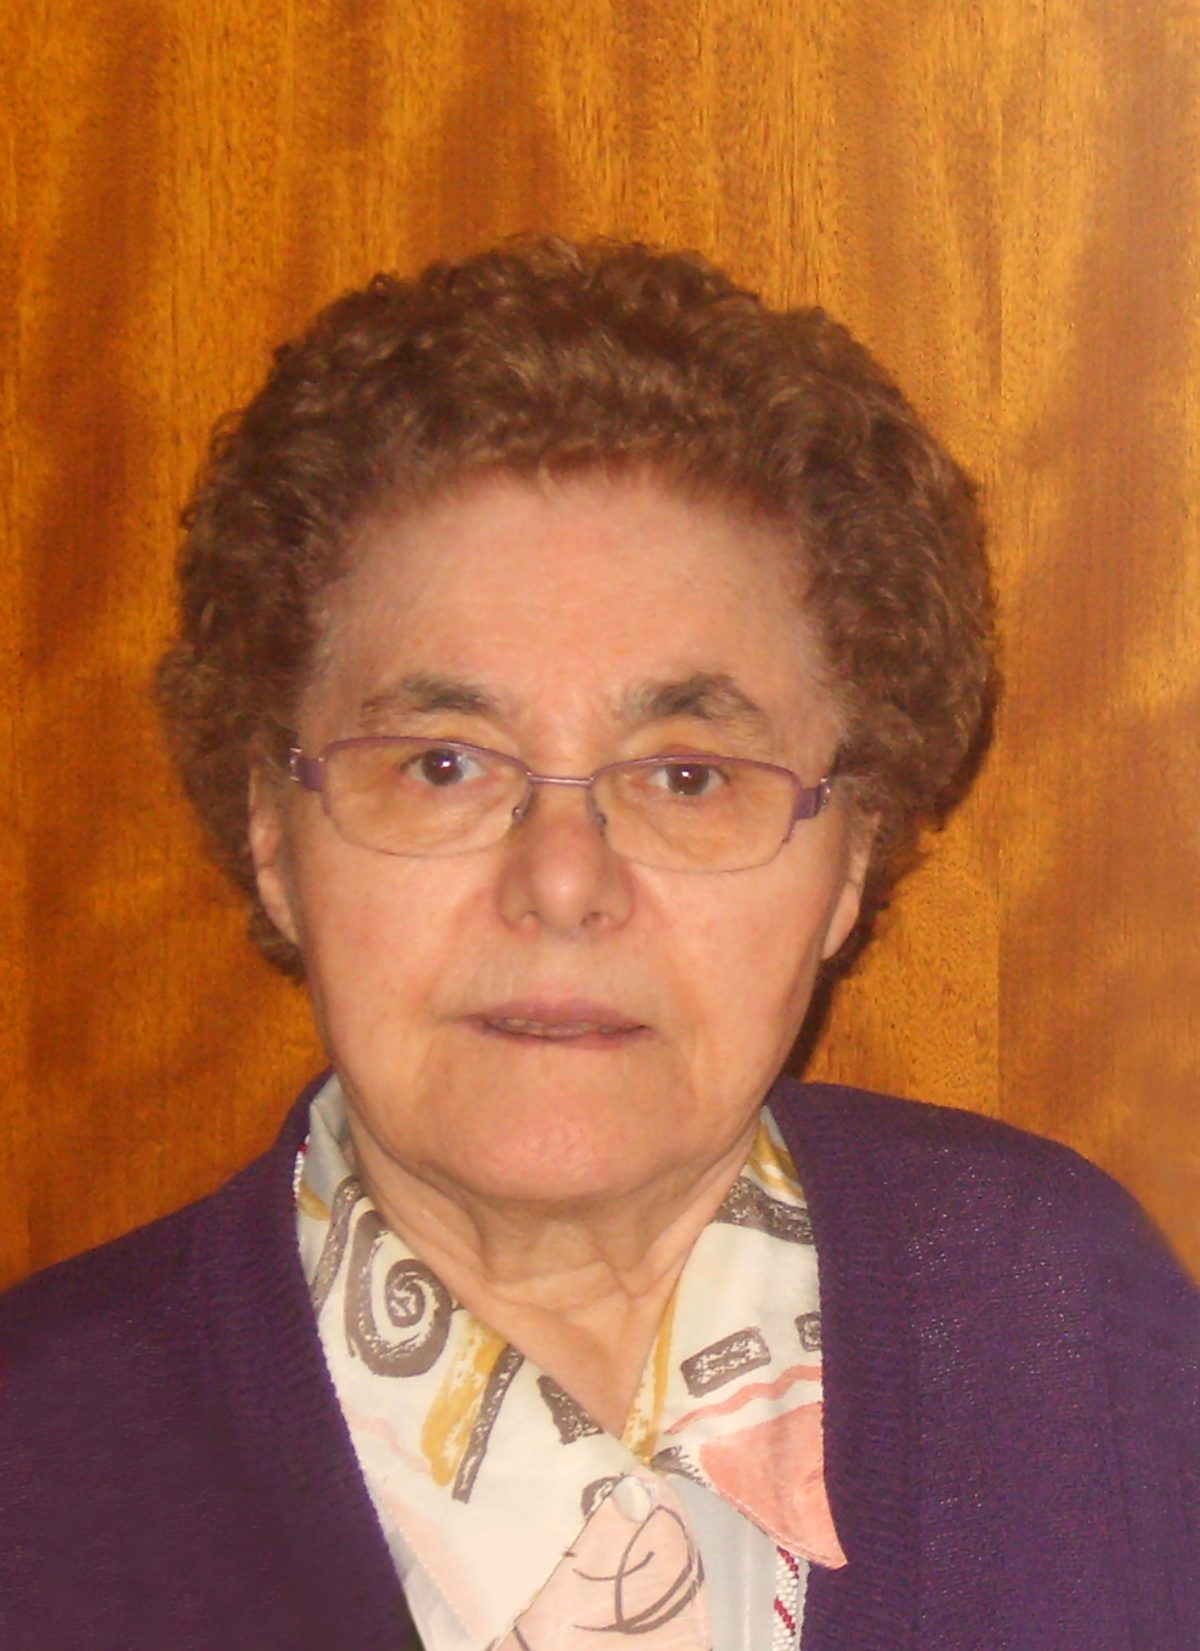 Maria Cuenen